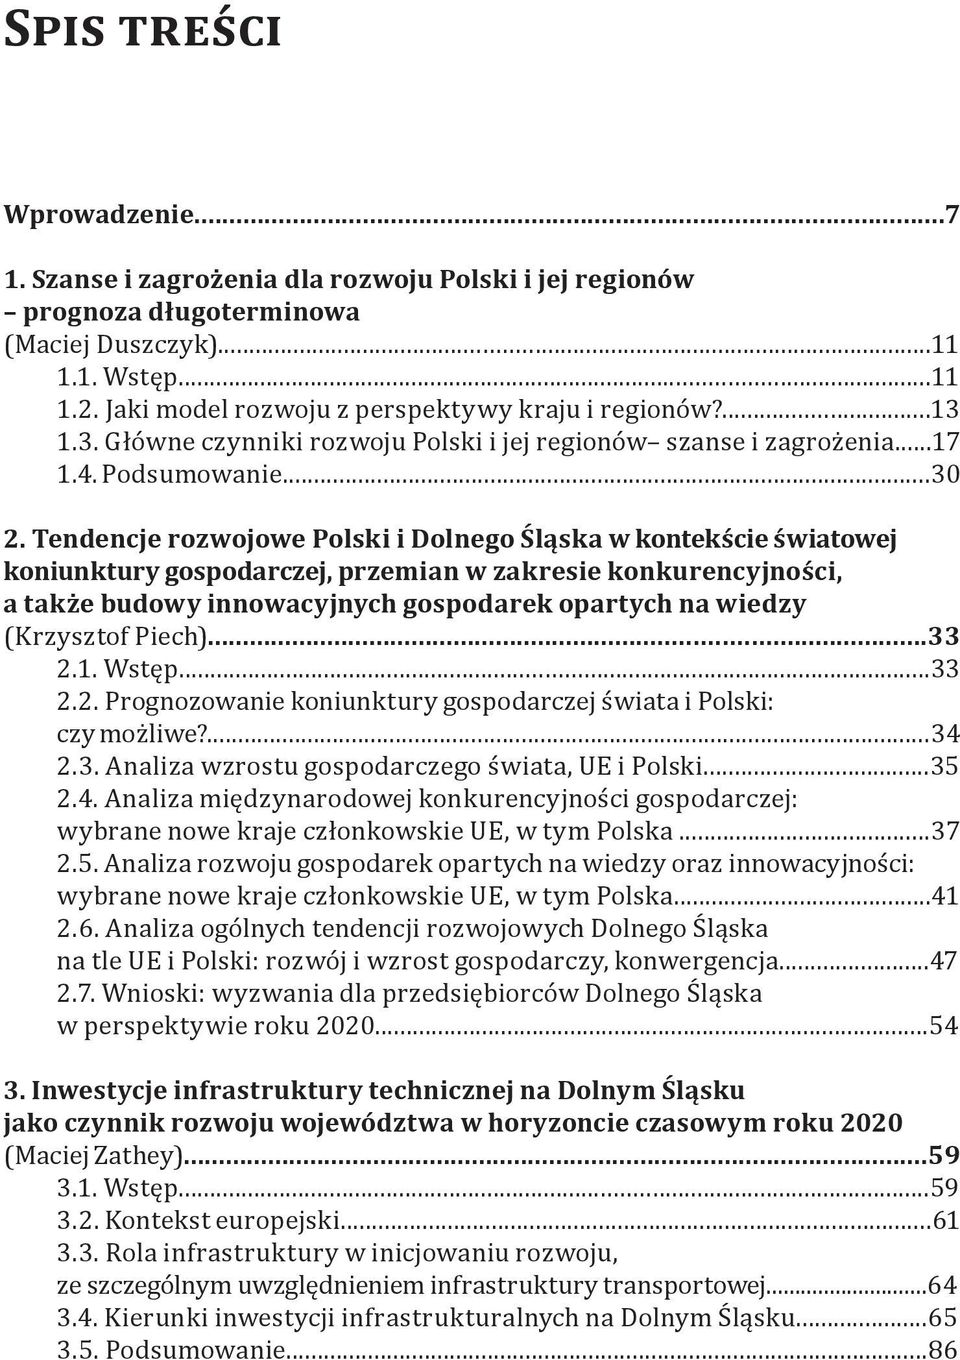 Tendencje rozwojowe Polski i Dolnego Śląska w kontekście światowej koniunktury gospodarczej, przemian w zakresie konkurencyjności, a także budowy innowacyjnych gospodarek opartych na wiedzy